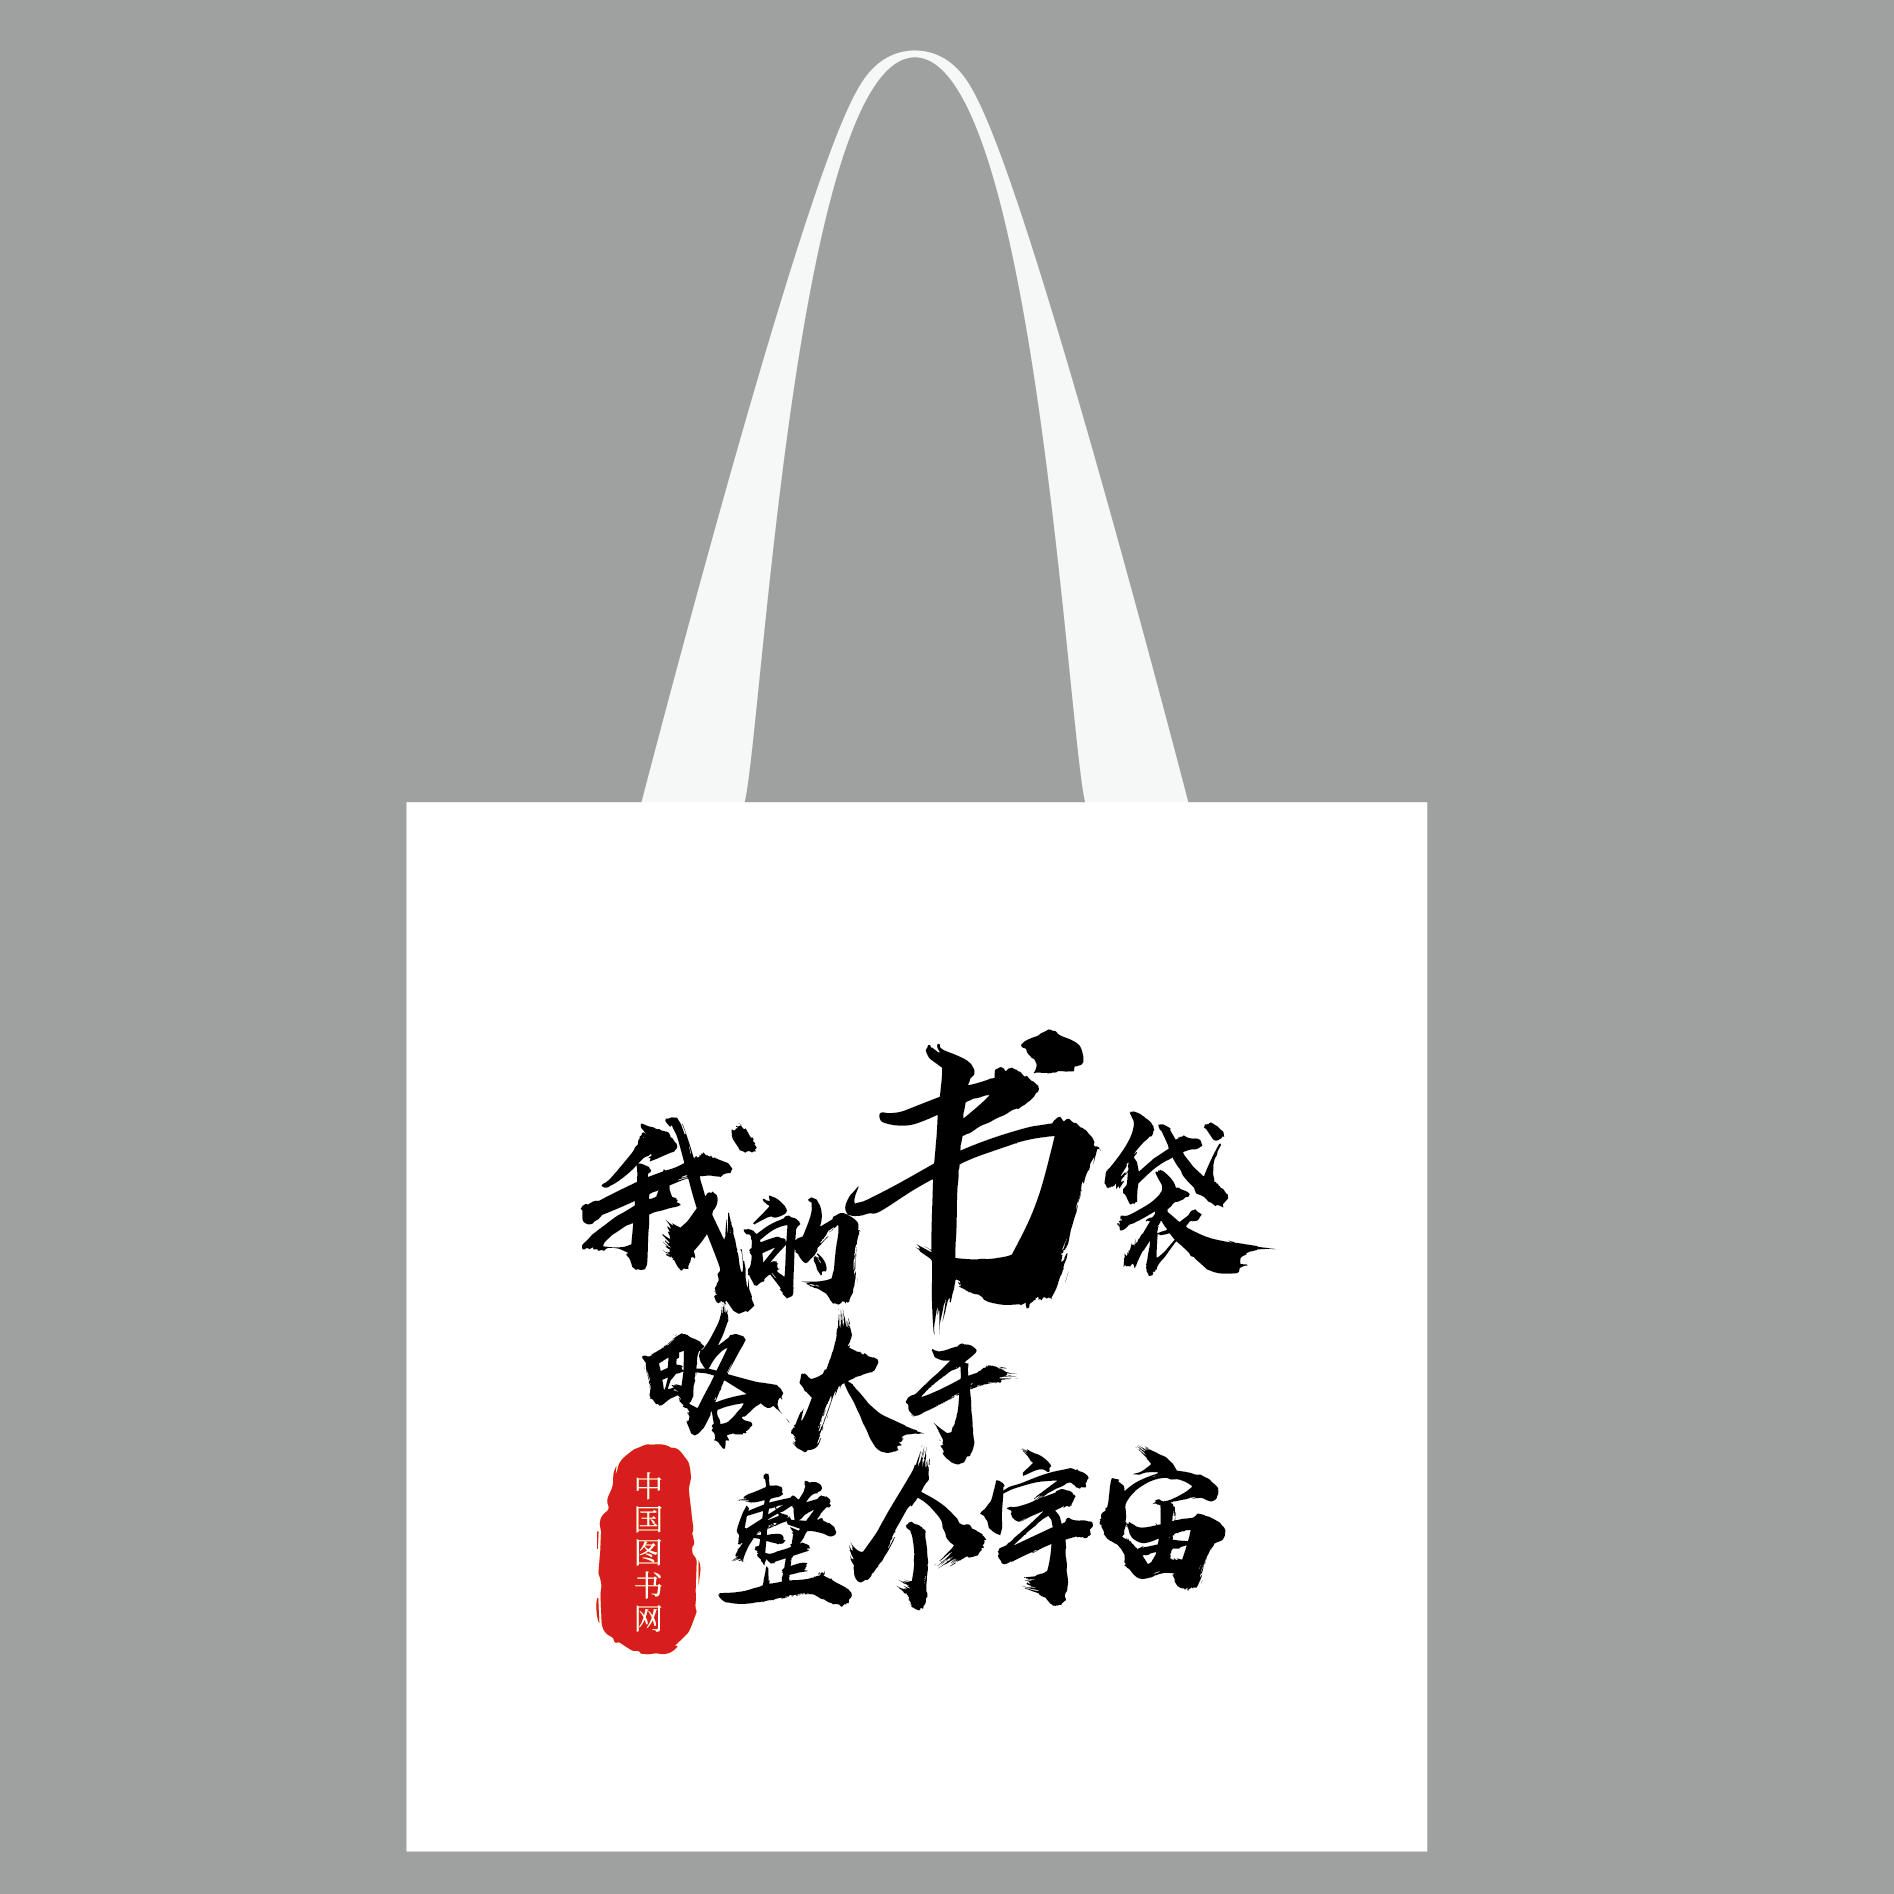 中国图书网20周年帆布包-我的书袋略大于整个宇宙